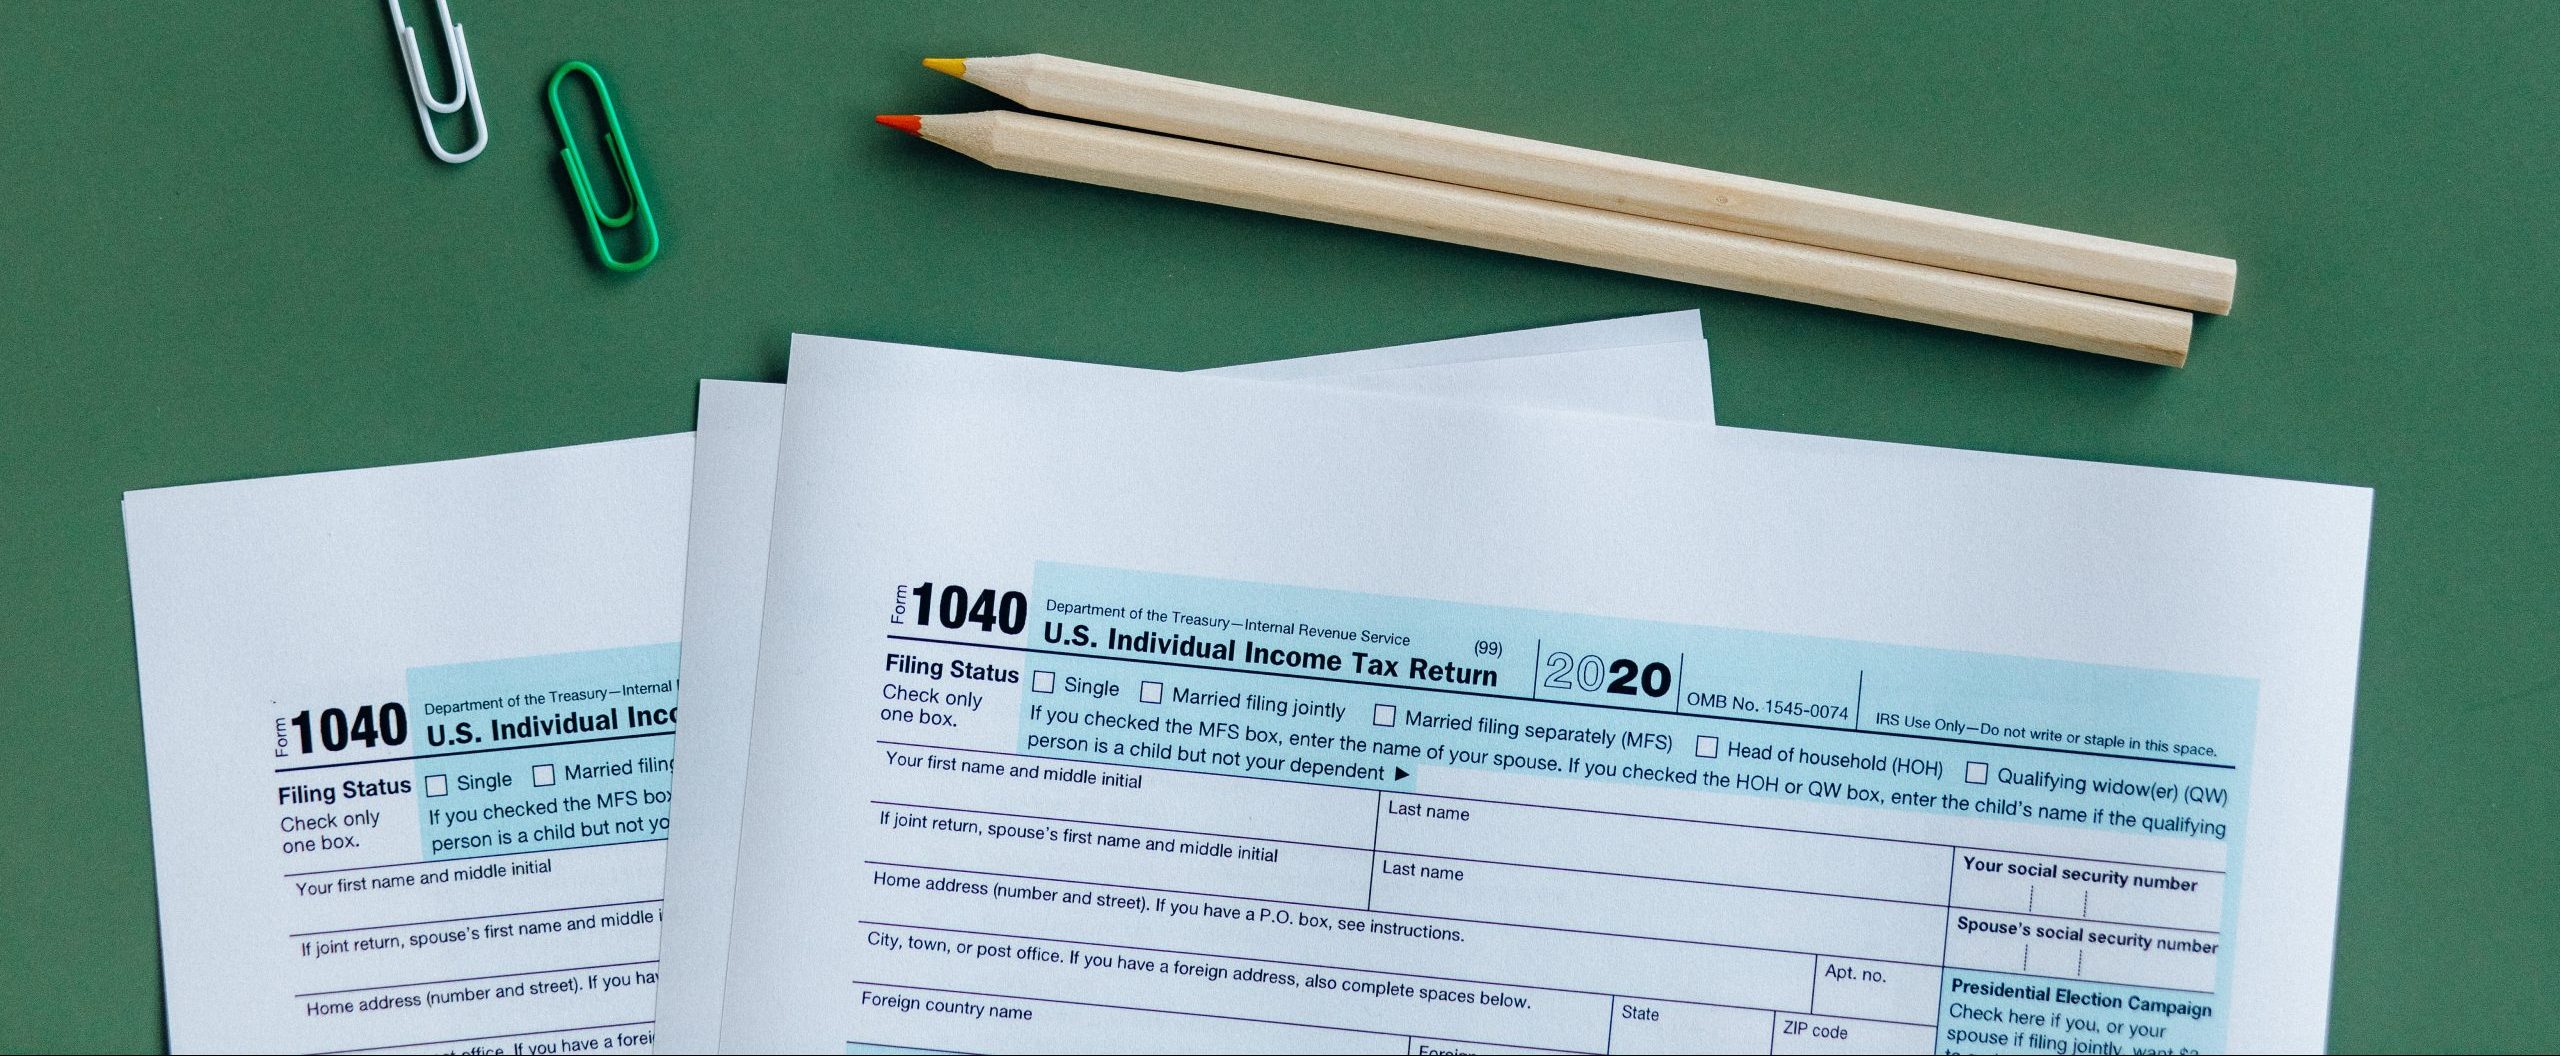 Qué documentos llevar a una cita para realizar sus impuestos (lista de verificación para impuestos)